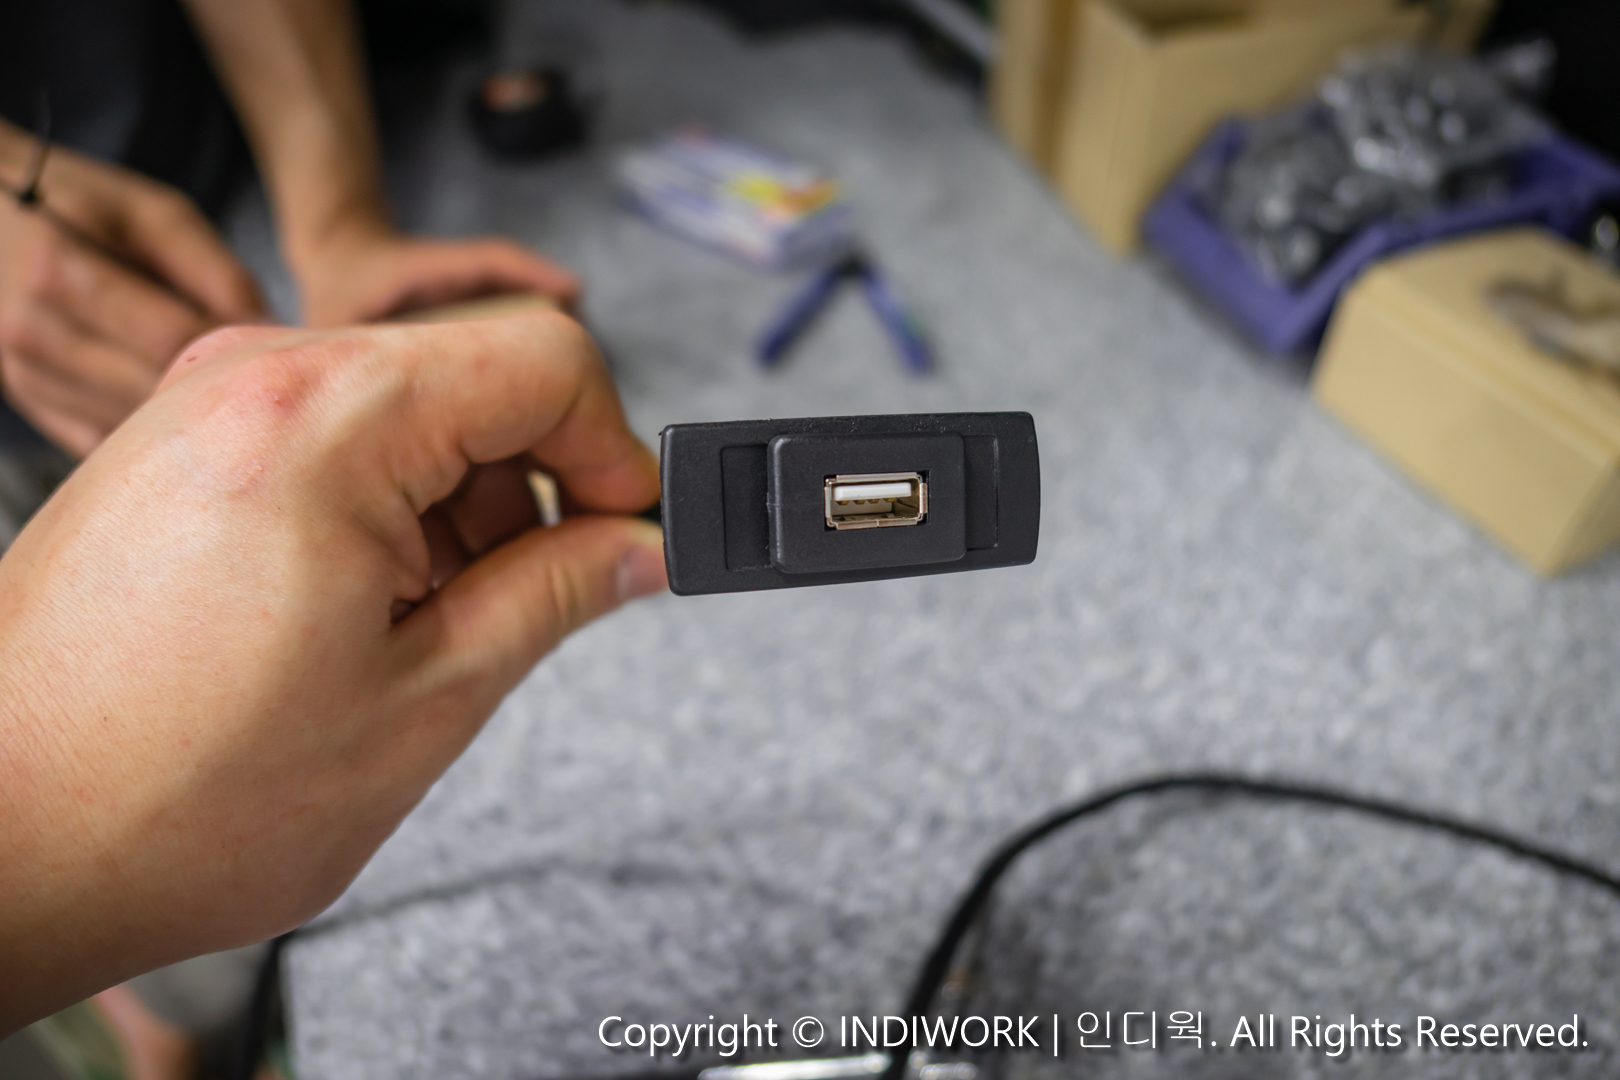 Apple CarPlay,USB port for 2014 Mercedes E-Class E300 W212 "SCB-NTG4.5"